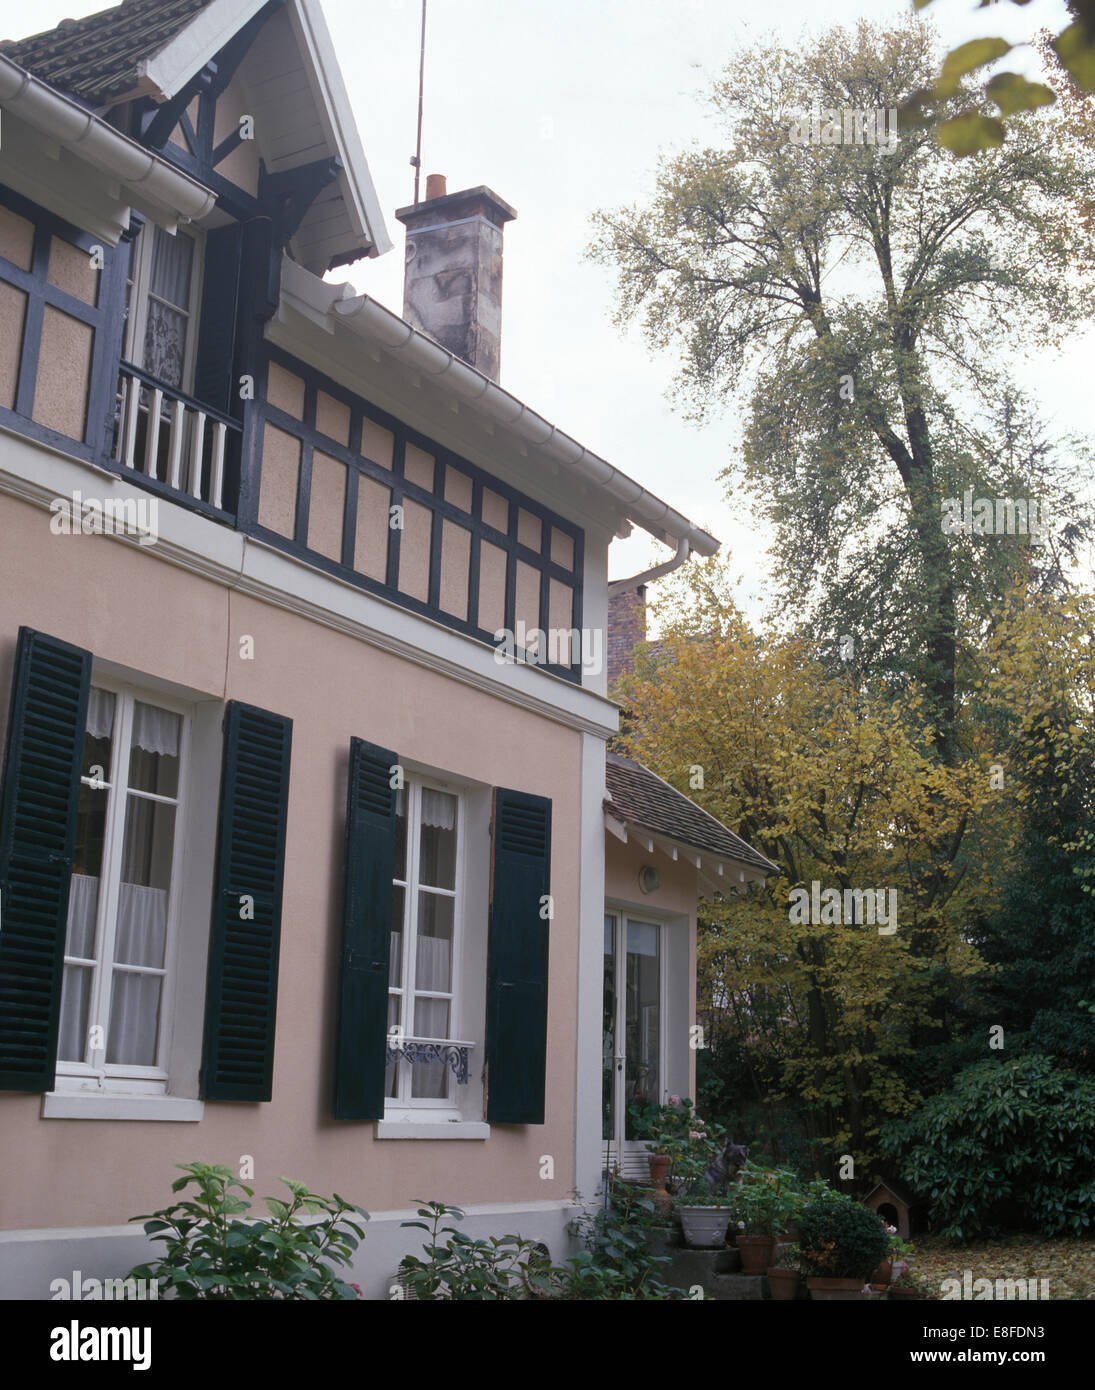 Esterno della casa cittadina francese con nero persiane louvre e abbaino Foto Stock